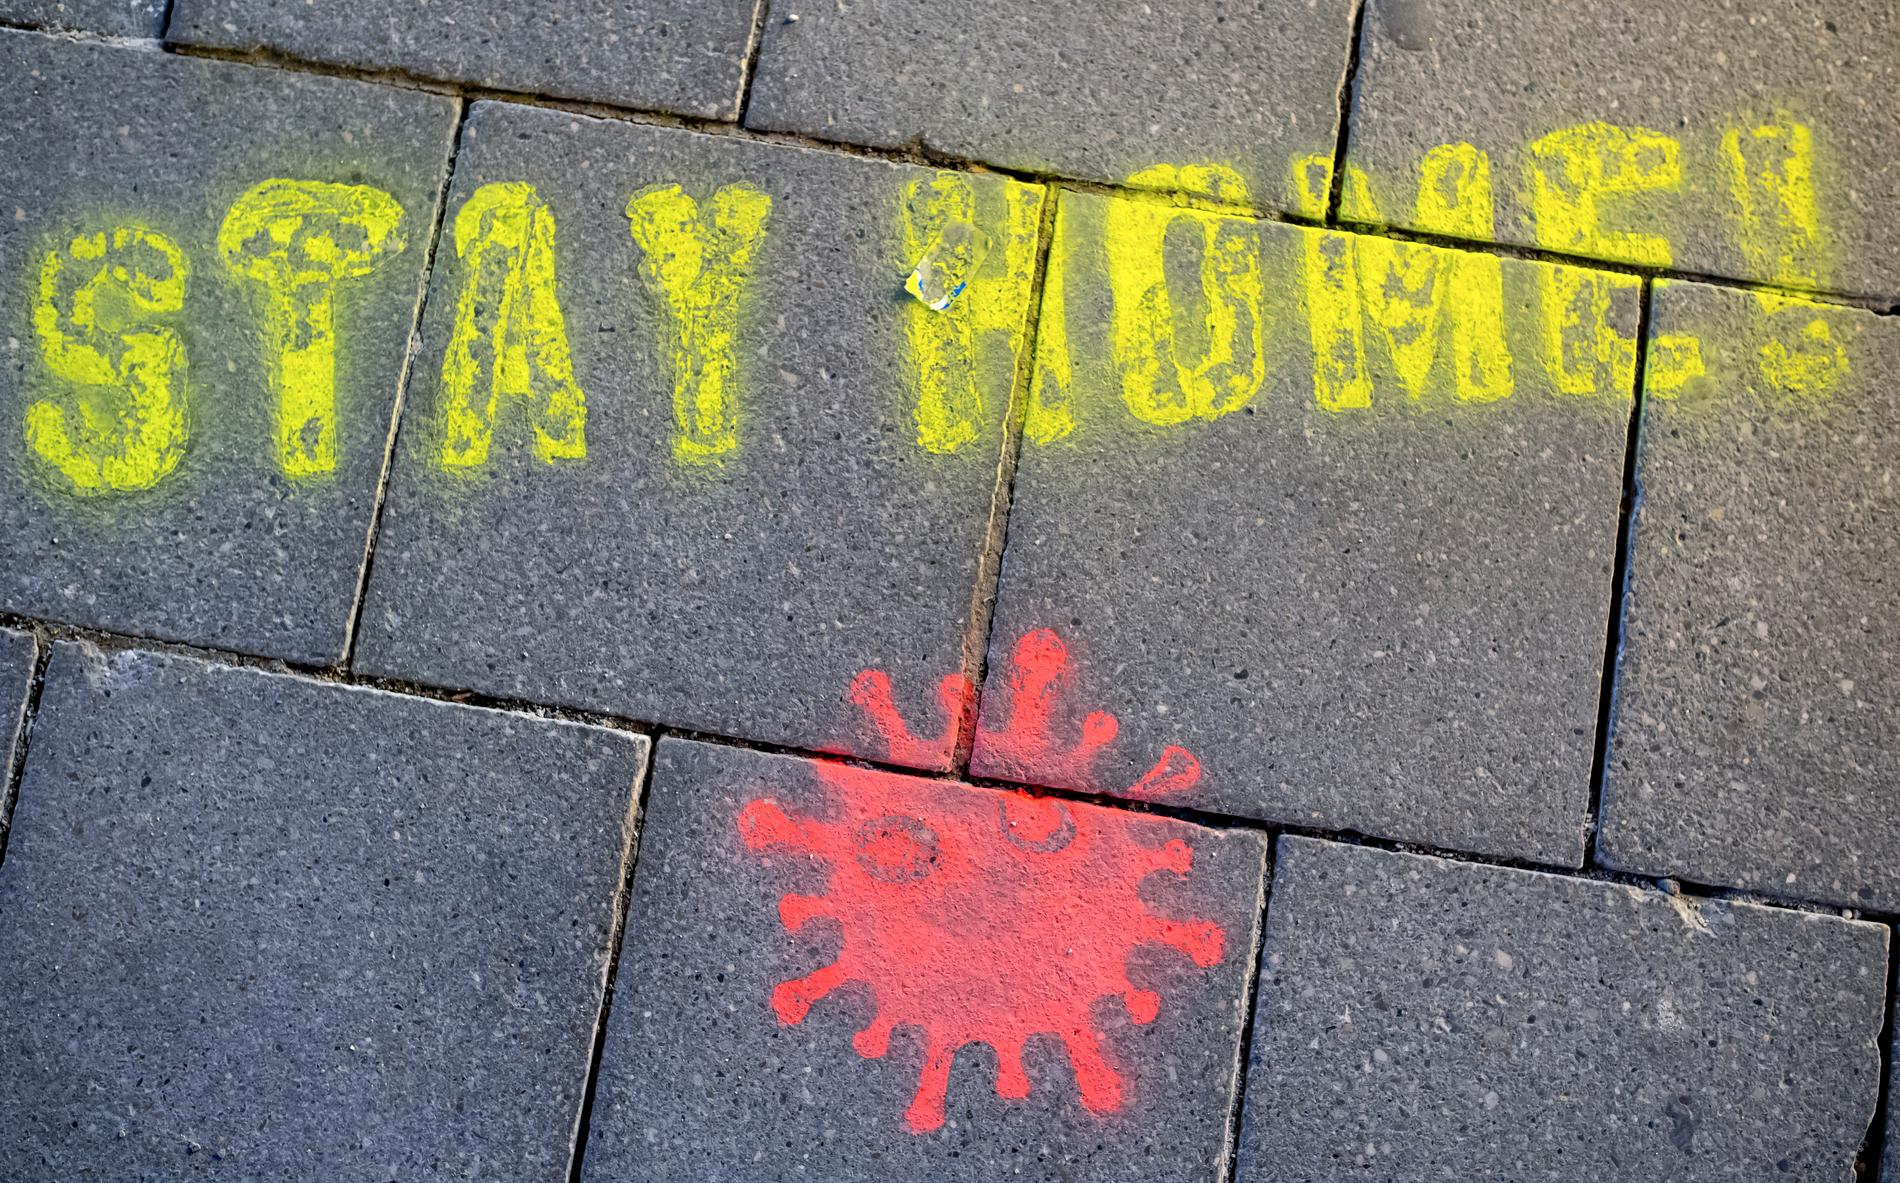 "Stanna hemma!". Uppmaningen har sprejats på asfalten i München i Tyskland.